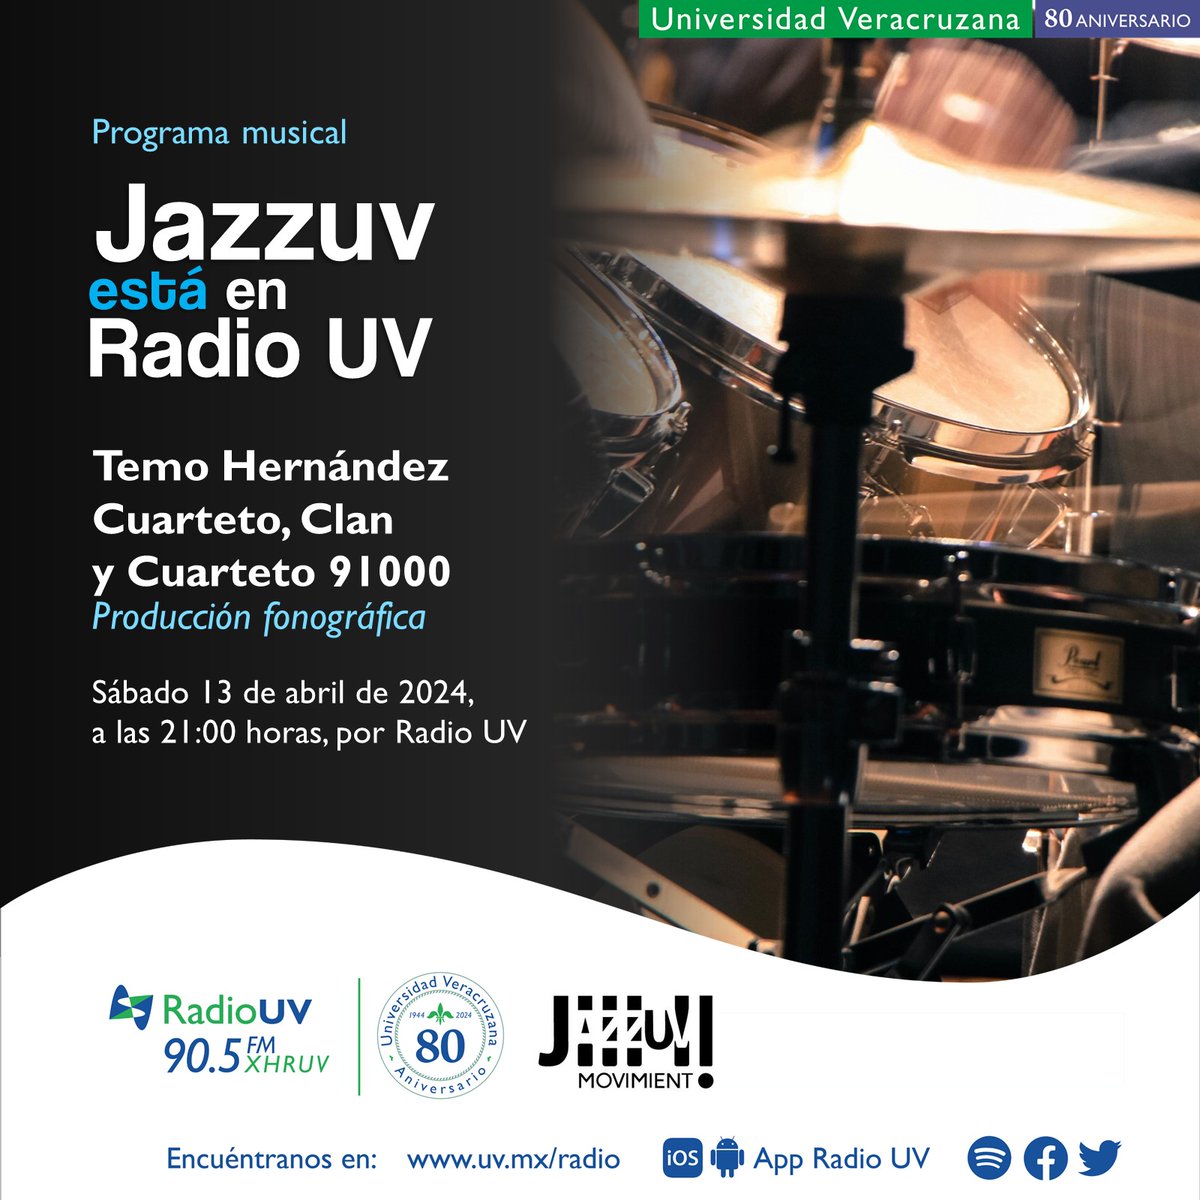 ¡El ritmo de JazzUV está en Radio UV! 🎼✨ Acompaña tu fin de semana con una serie de propuestas musicales de creadoras y creadores #JazzUV. 👉🏻 Disfruta la música de Temo Hernández Cuarteto, Clan y Cuarteto 91000. 🎧13 de abril | 21:00 horas | 90.5 FM